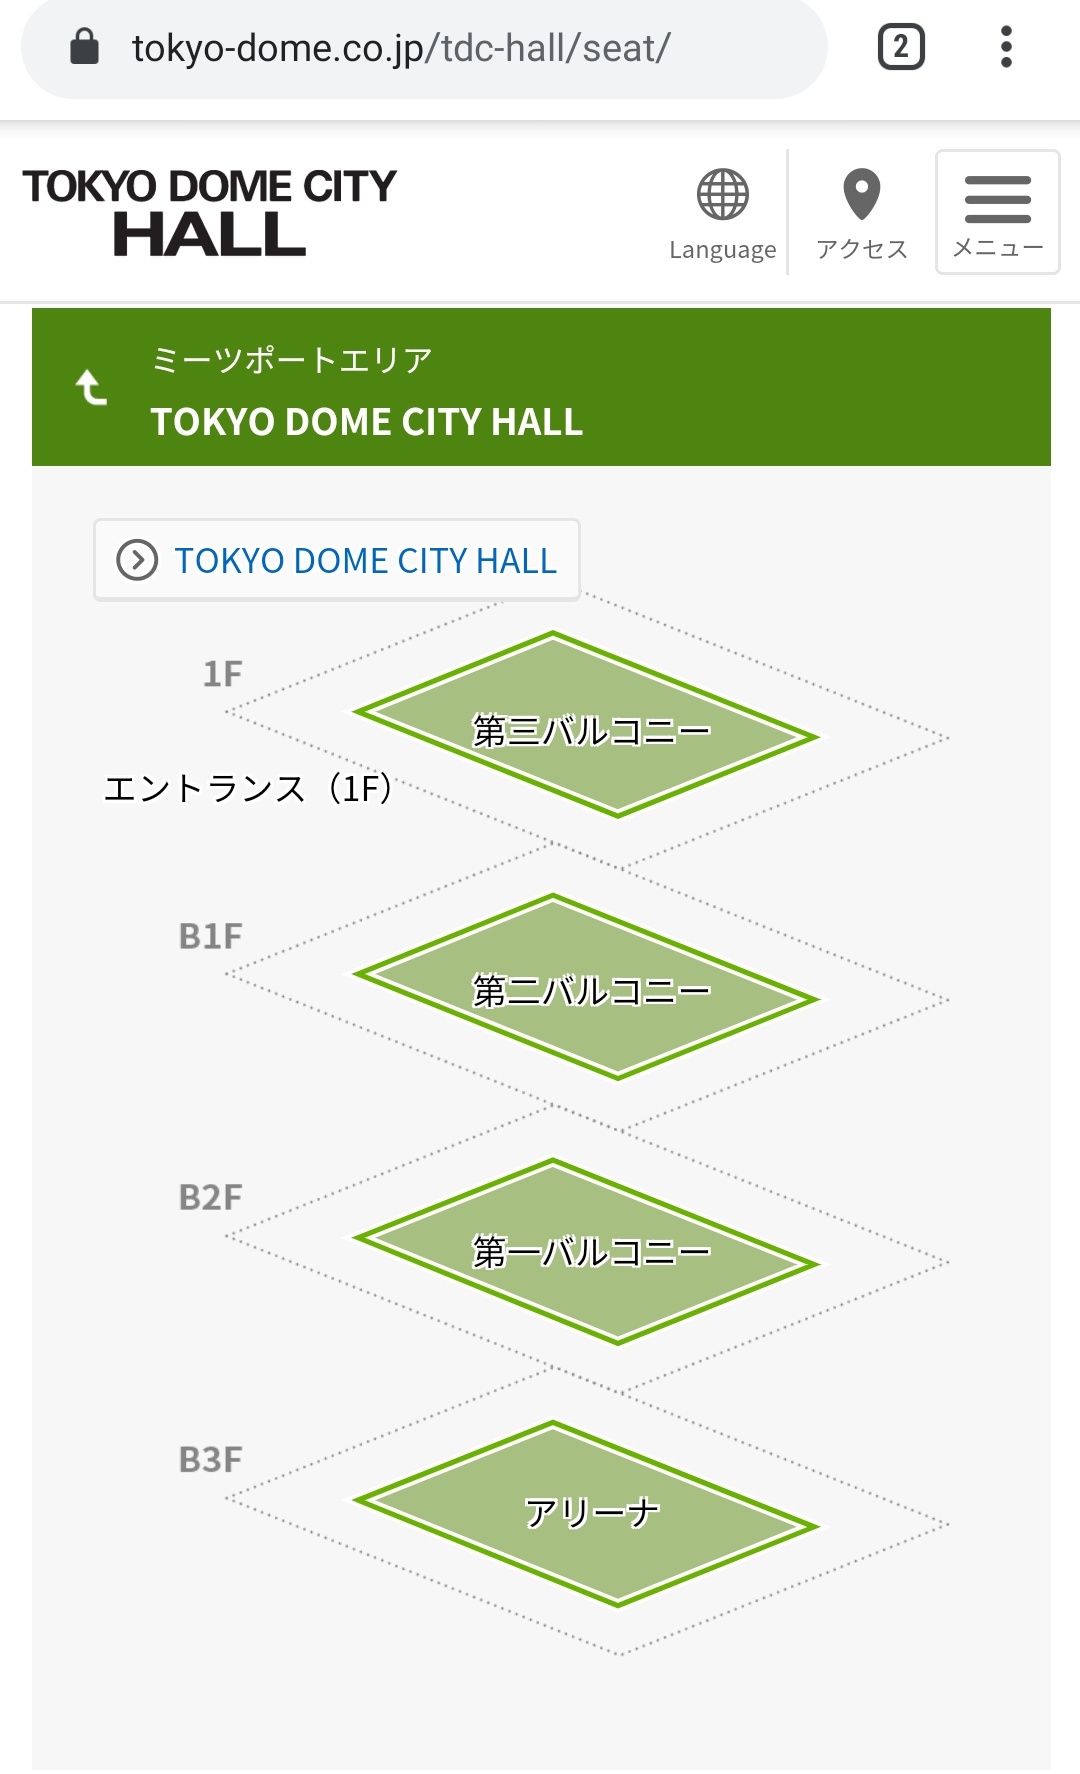 パパさん 東京ガーデンシアター キャパ5 000 は東京ドームシティホール キャパ3 000 を大きくした感じの構造なので こちらが参考になります バルコニー は座席エリアを指すのではなくフロアを示します ２ｆがアリーナ ３階が第一バルコニー ４階が第